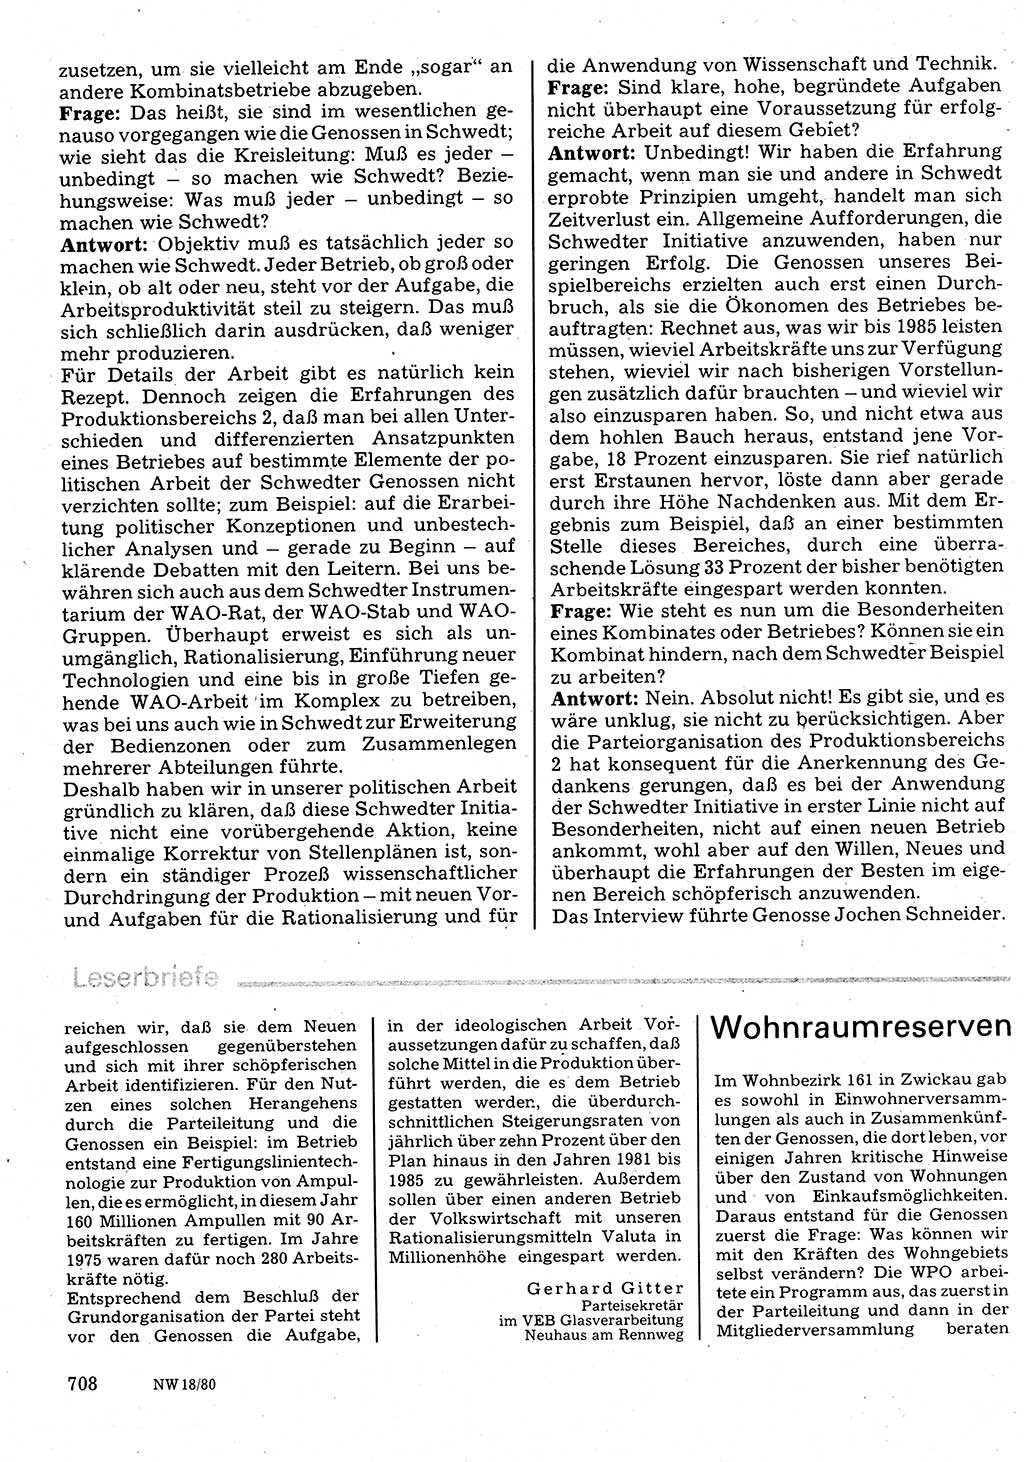 Neuer Weg (NW), Organ des Zentralkomitees (ZK) der SED (Sozialistische Einheitspartei Deutschlands) für Fragen des Parteilebens, 35. Jahrgang [Deutsche Demokratische Republik (DDR)] 1980, Seite 708 (NW ZK SED DDR 1980, S. 708)